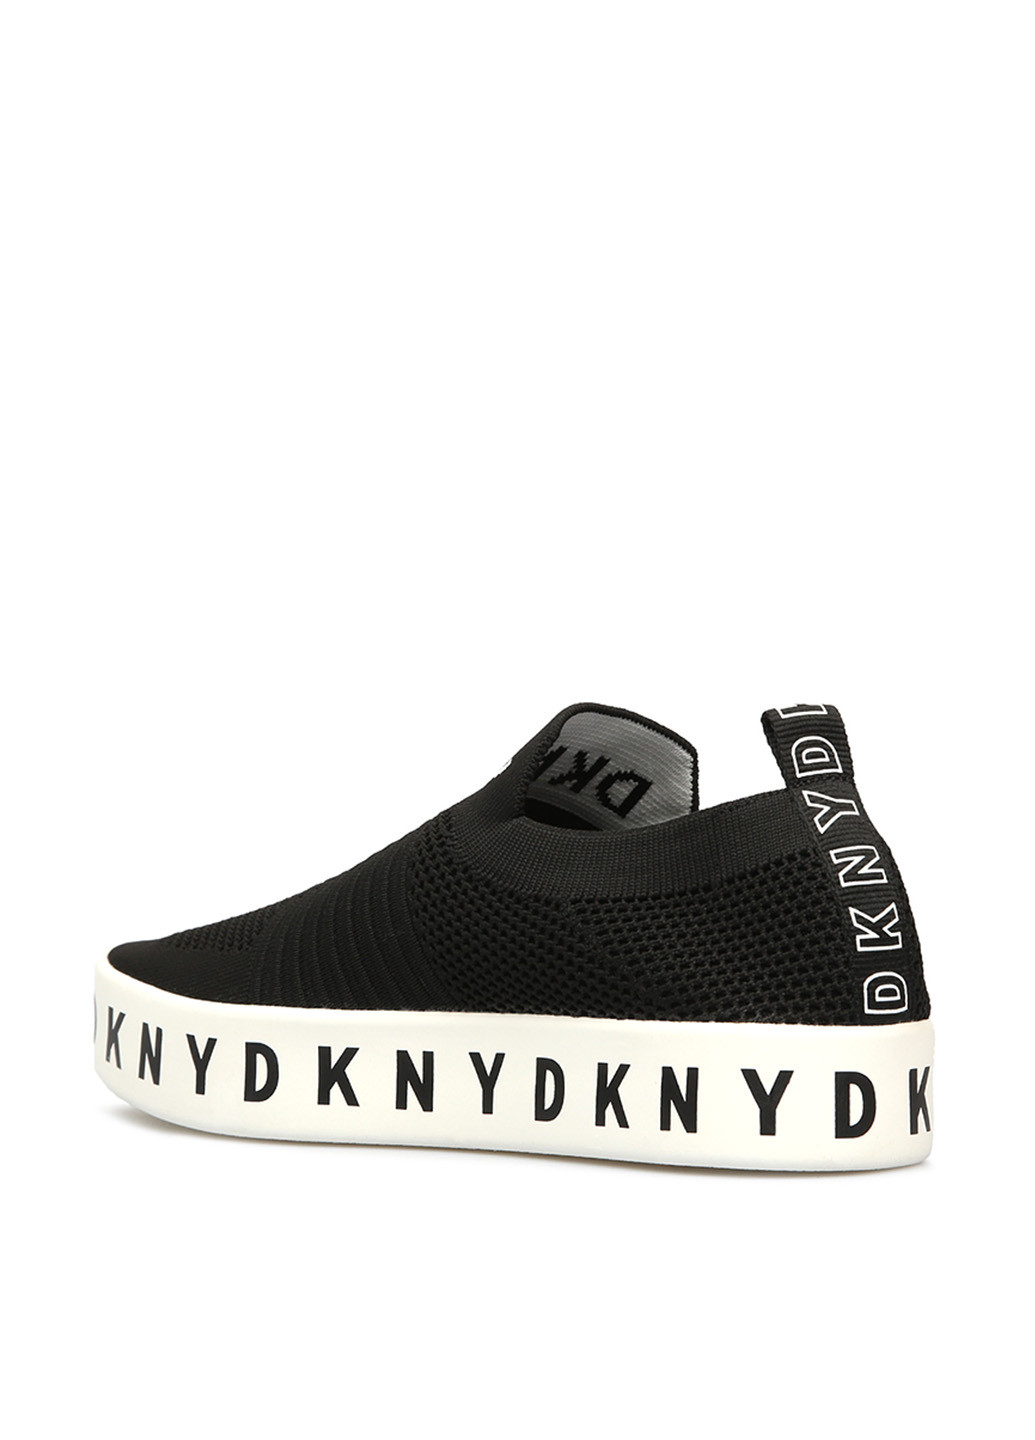 Черные слипоны DKNY с надписью